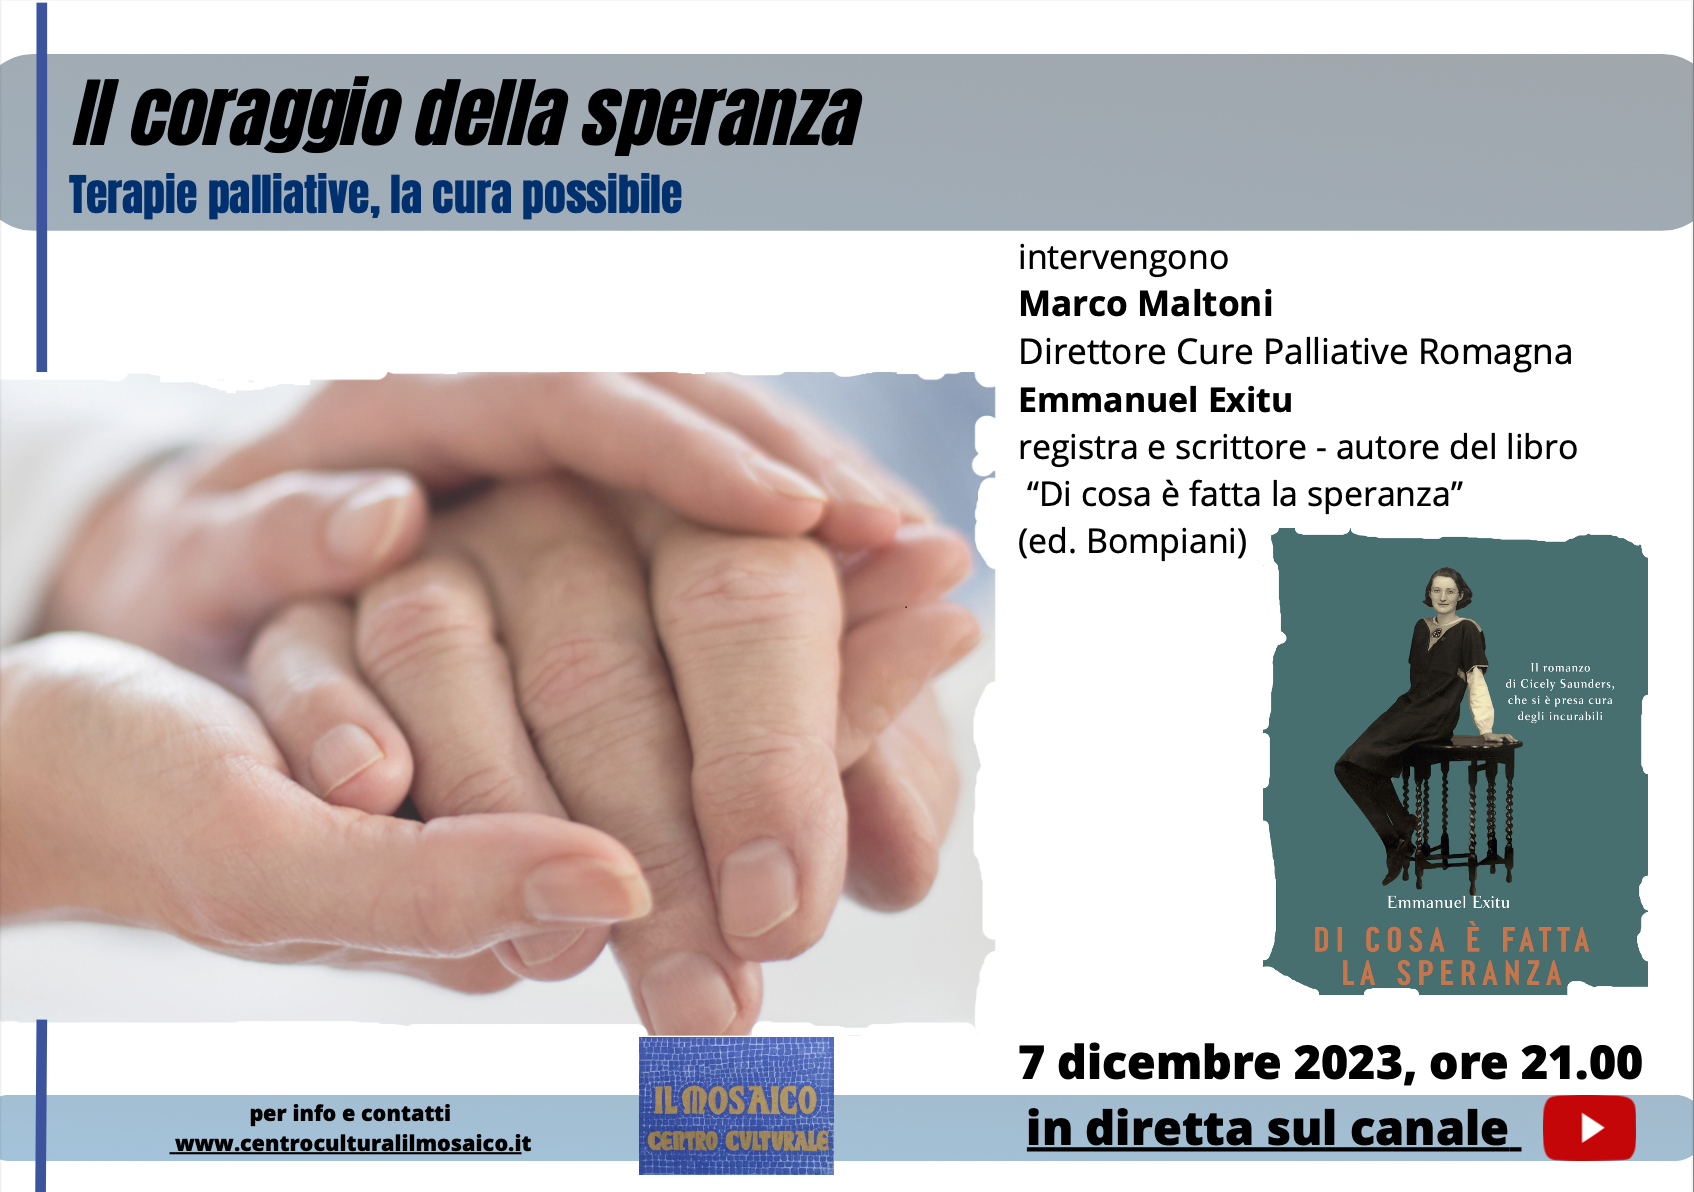 Featured image for “Trento: Terapie palliative, la cura possibile”